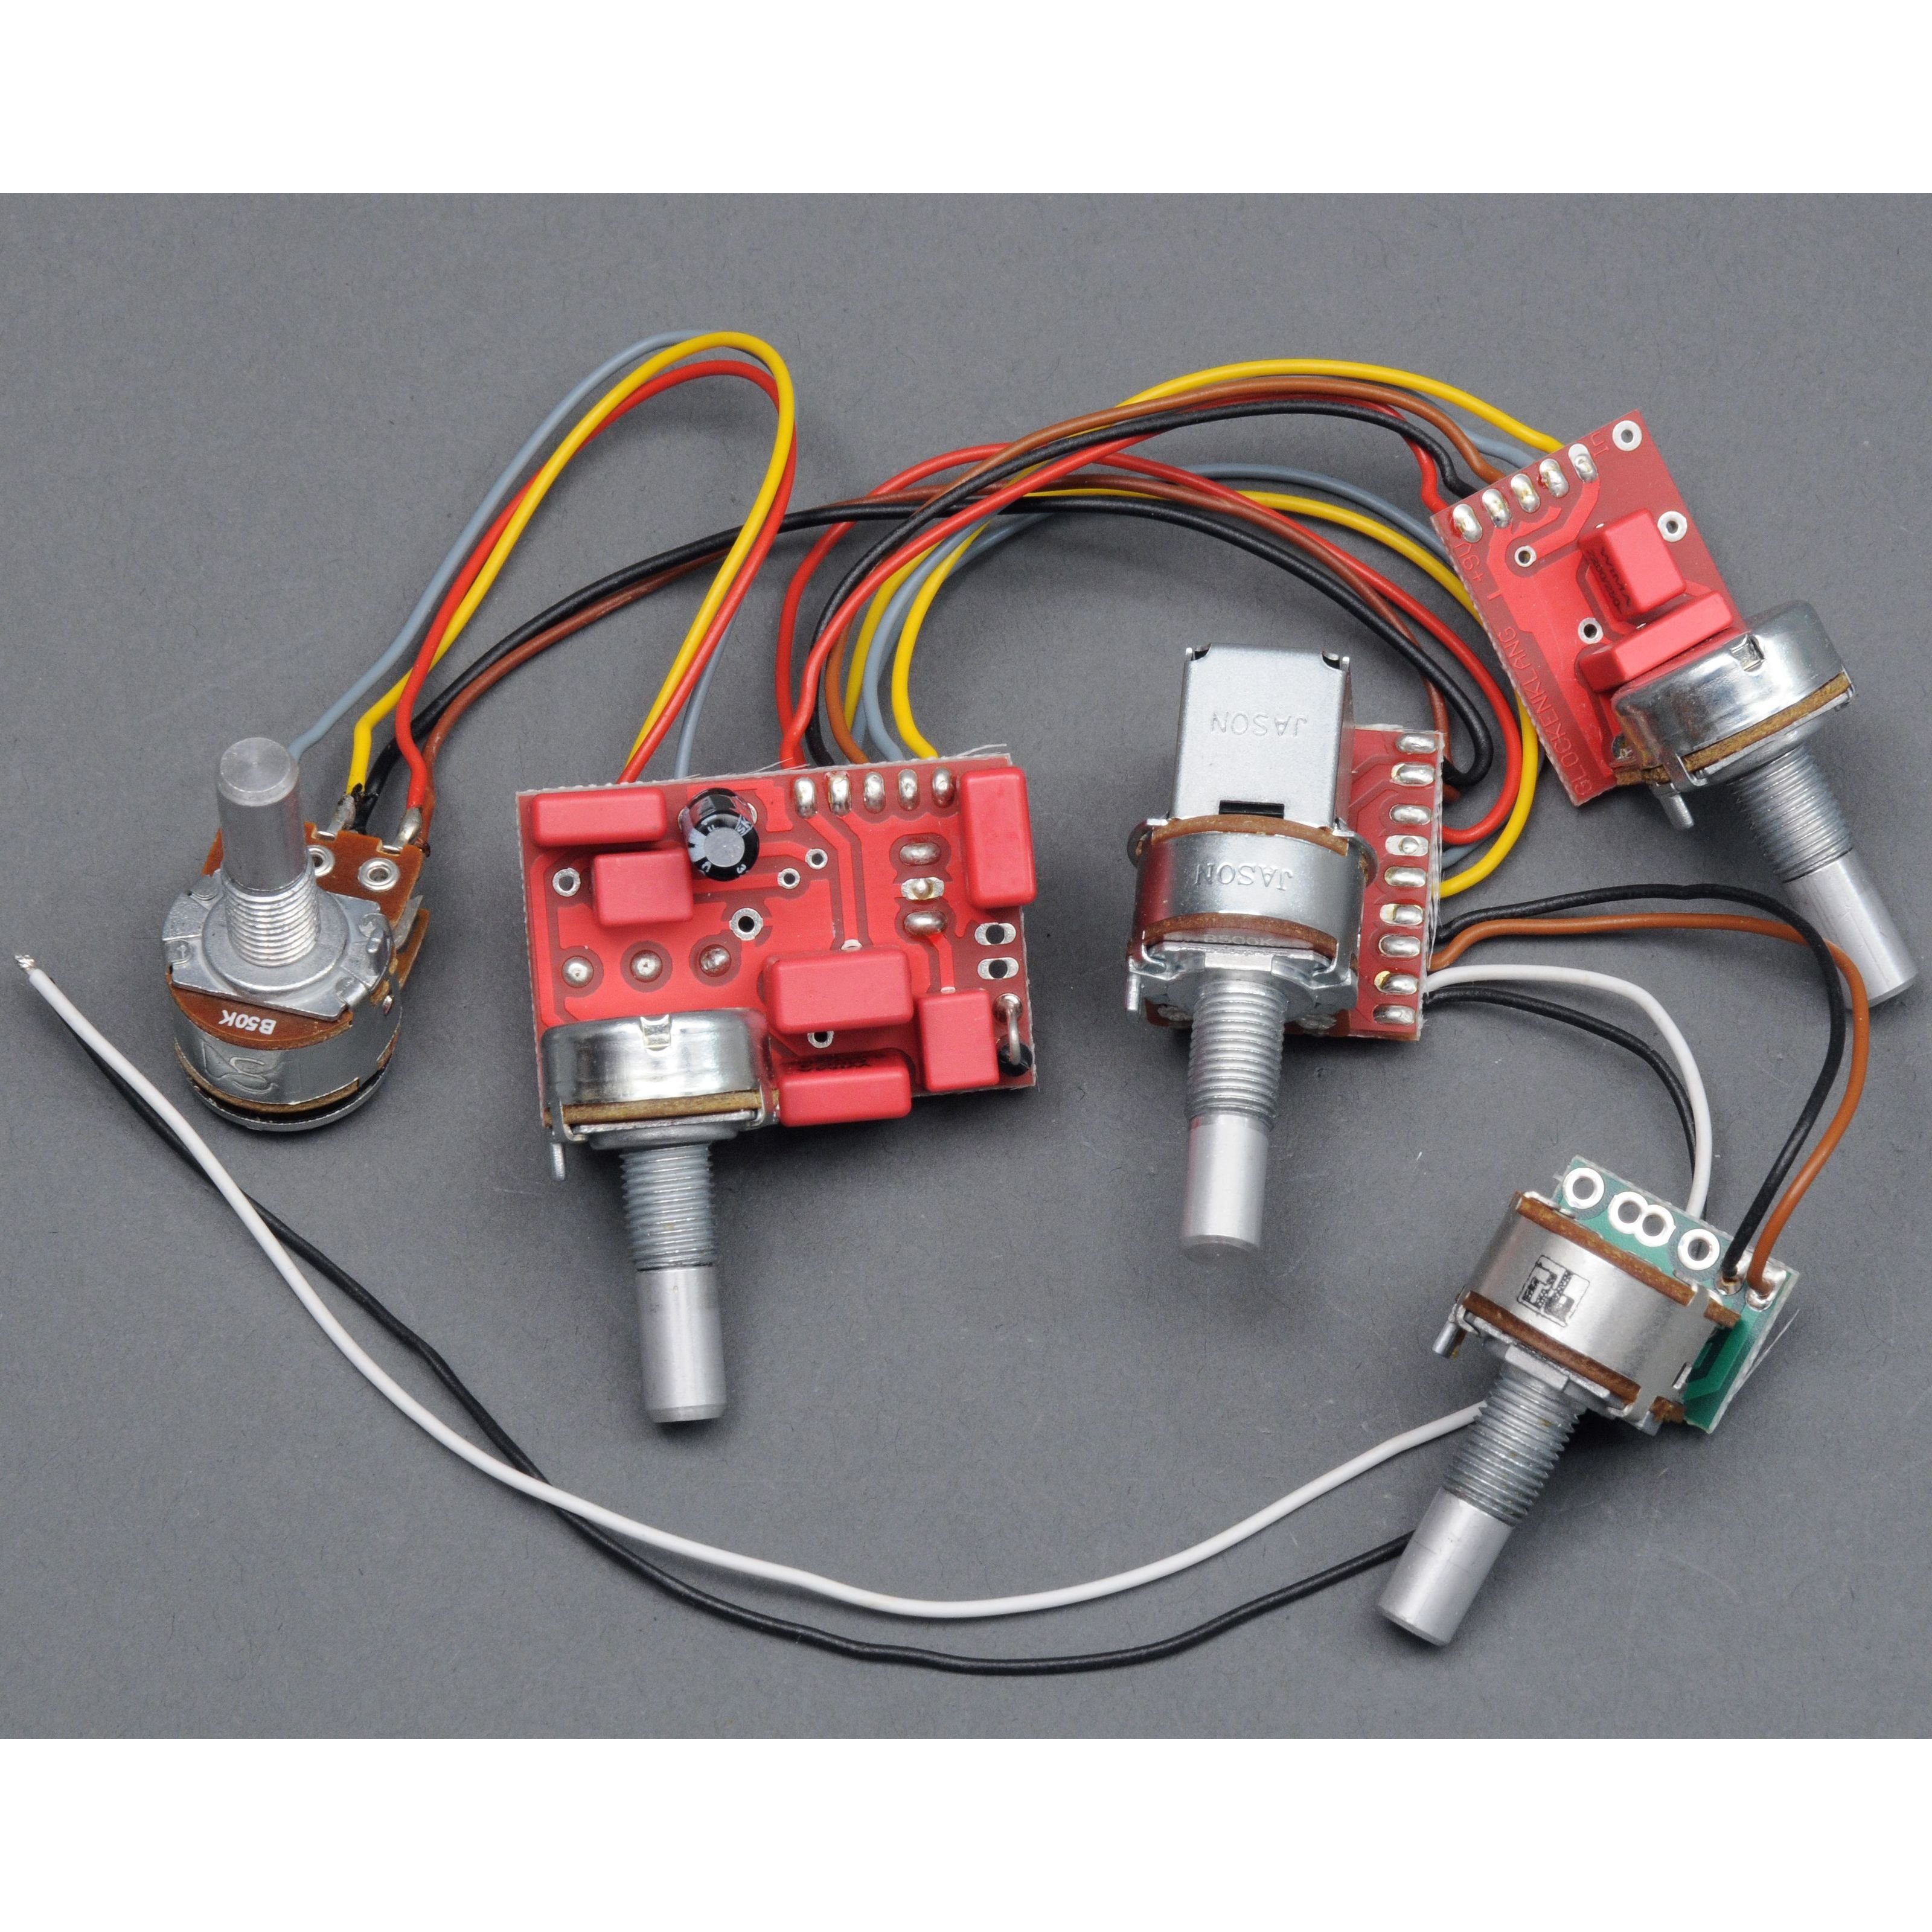 Glockenklang Tonabnehmer, (3 Band Elektronik, Bass-Tonabnehmer, Bass-Elektronik), 3 Band Elektronik - Bass-Elektronik